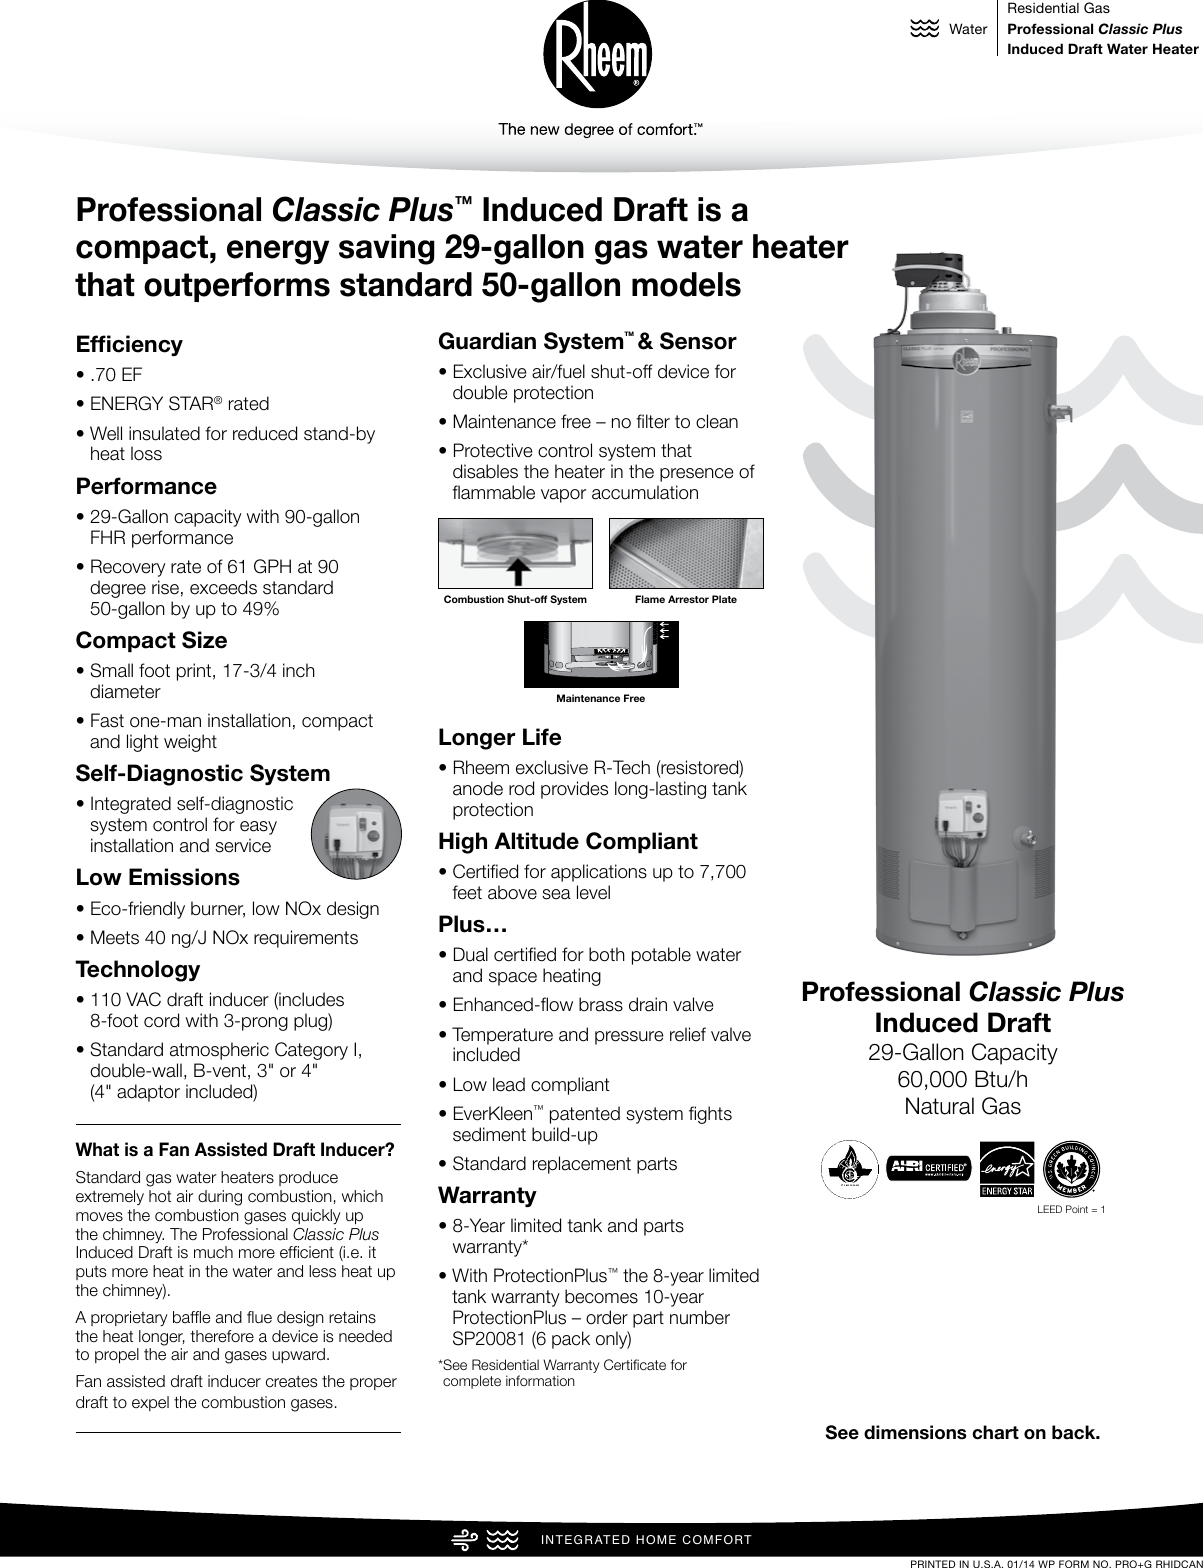 rheem guardian water heater manual